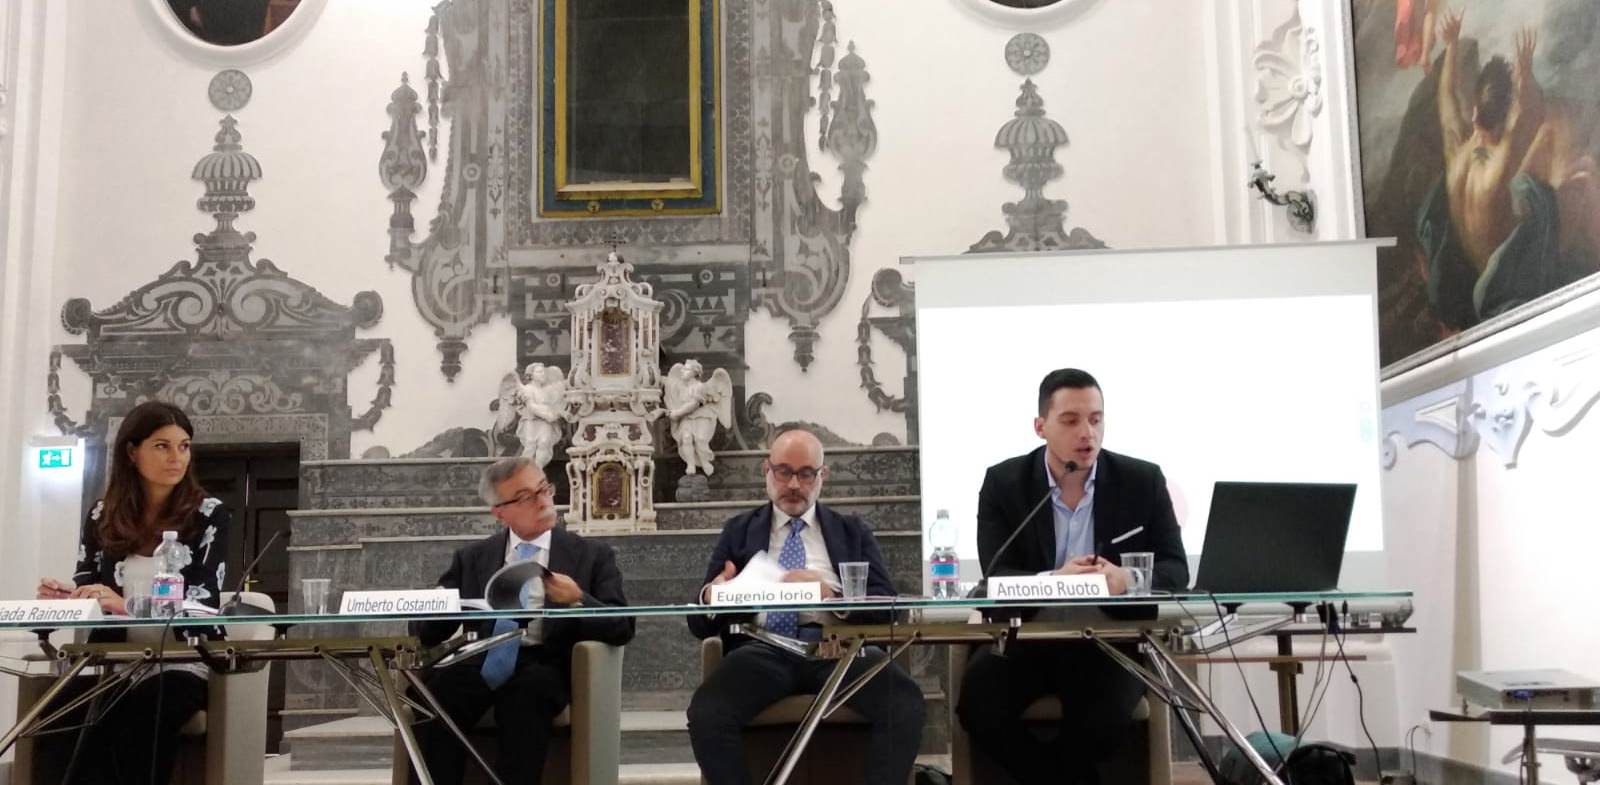 Presentazione ricerca al suor orsola Umberto Costantini e Eugenio Iorio con i ricercatori Antonio Ruoto e Giada Rainone